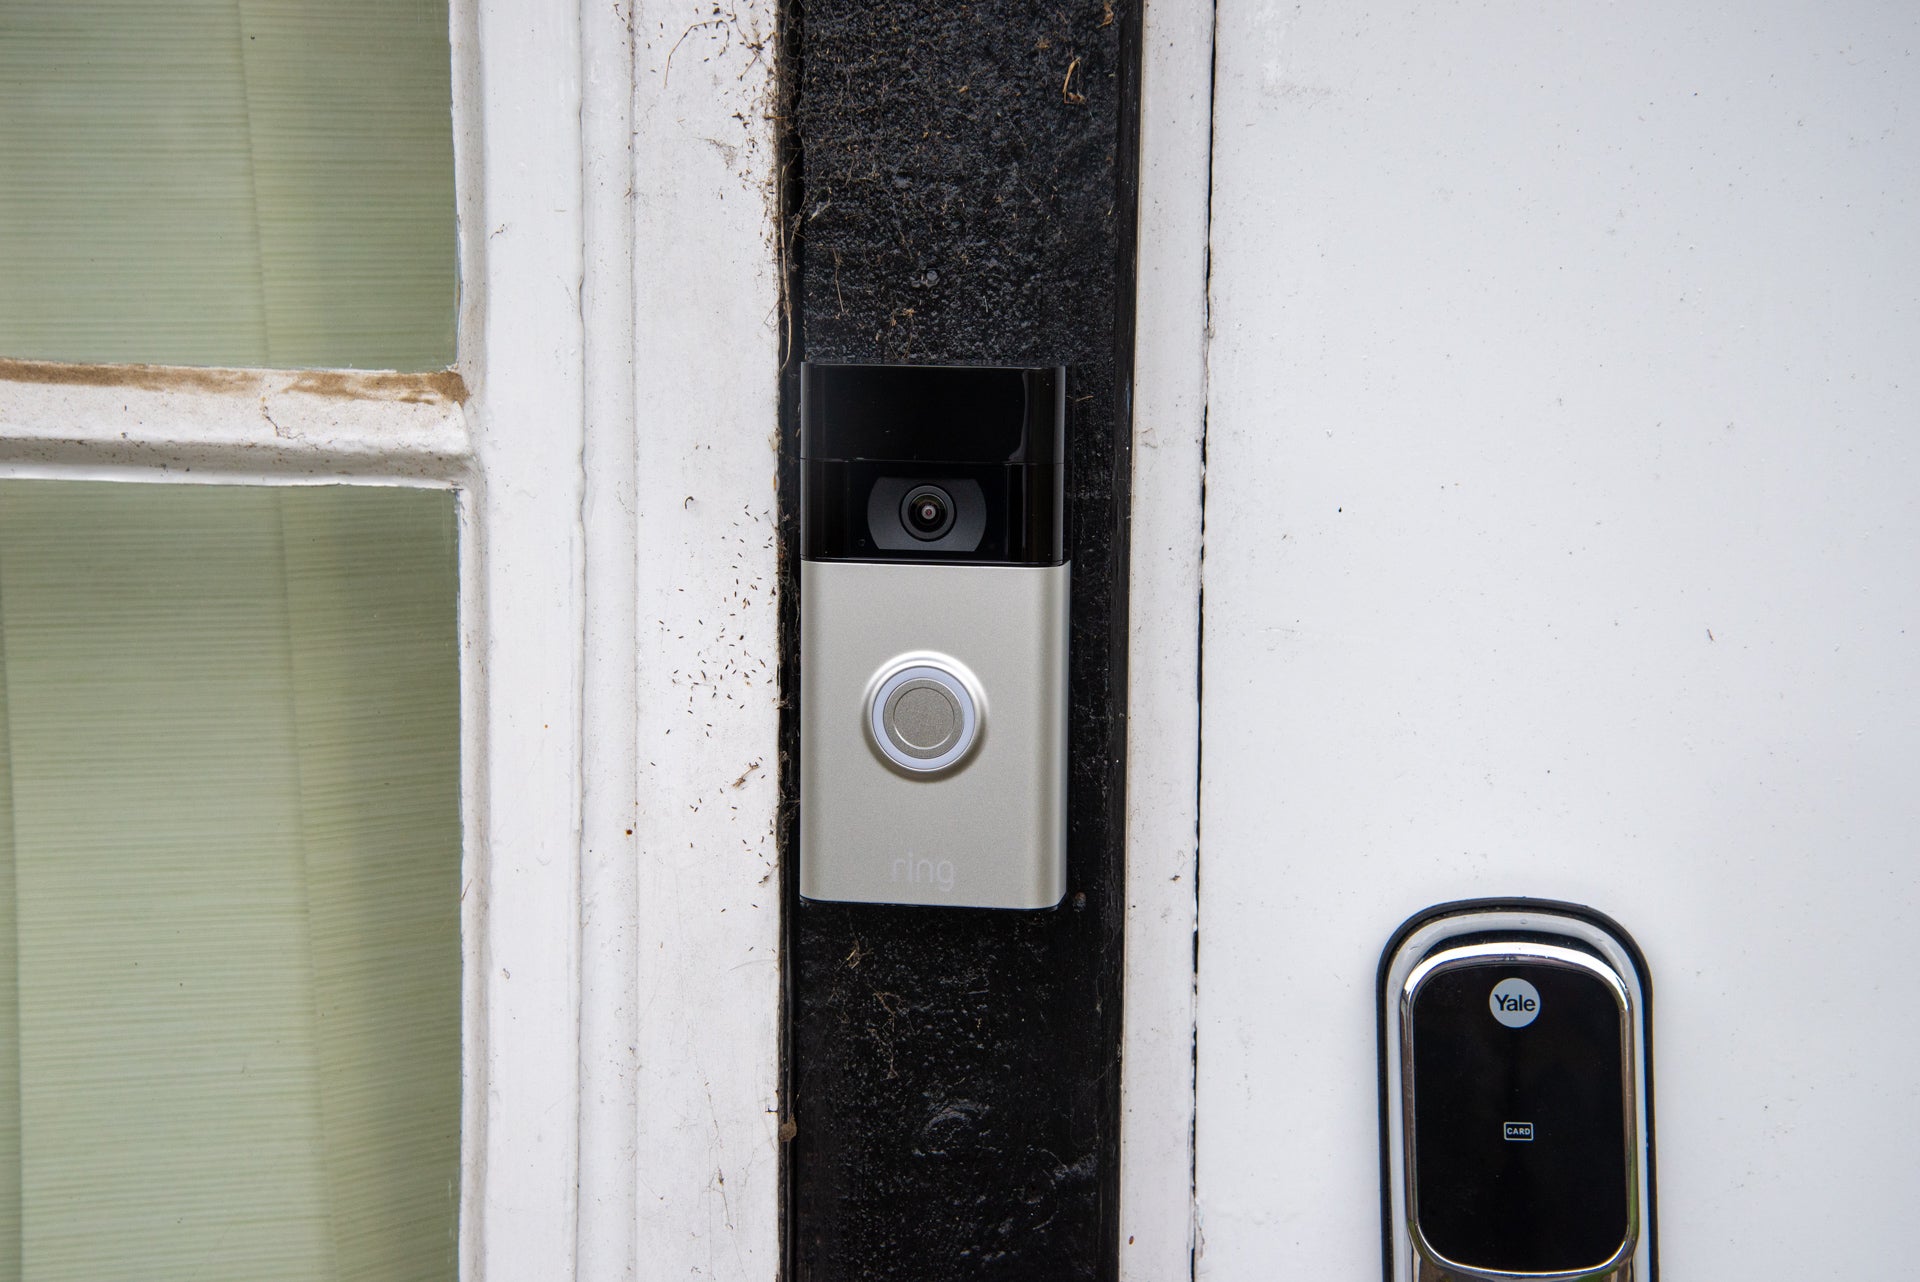 Ring Video Doorbell 2nd Gen installiert